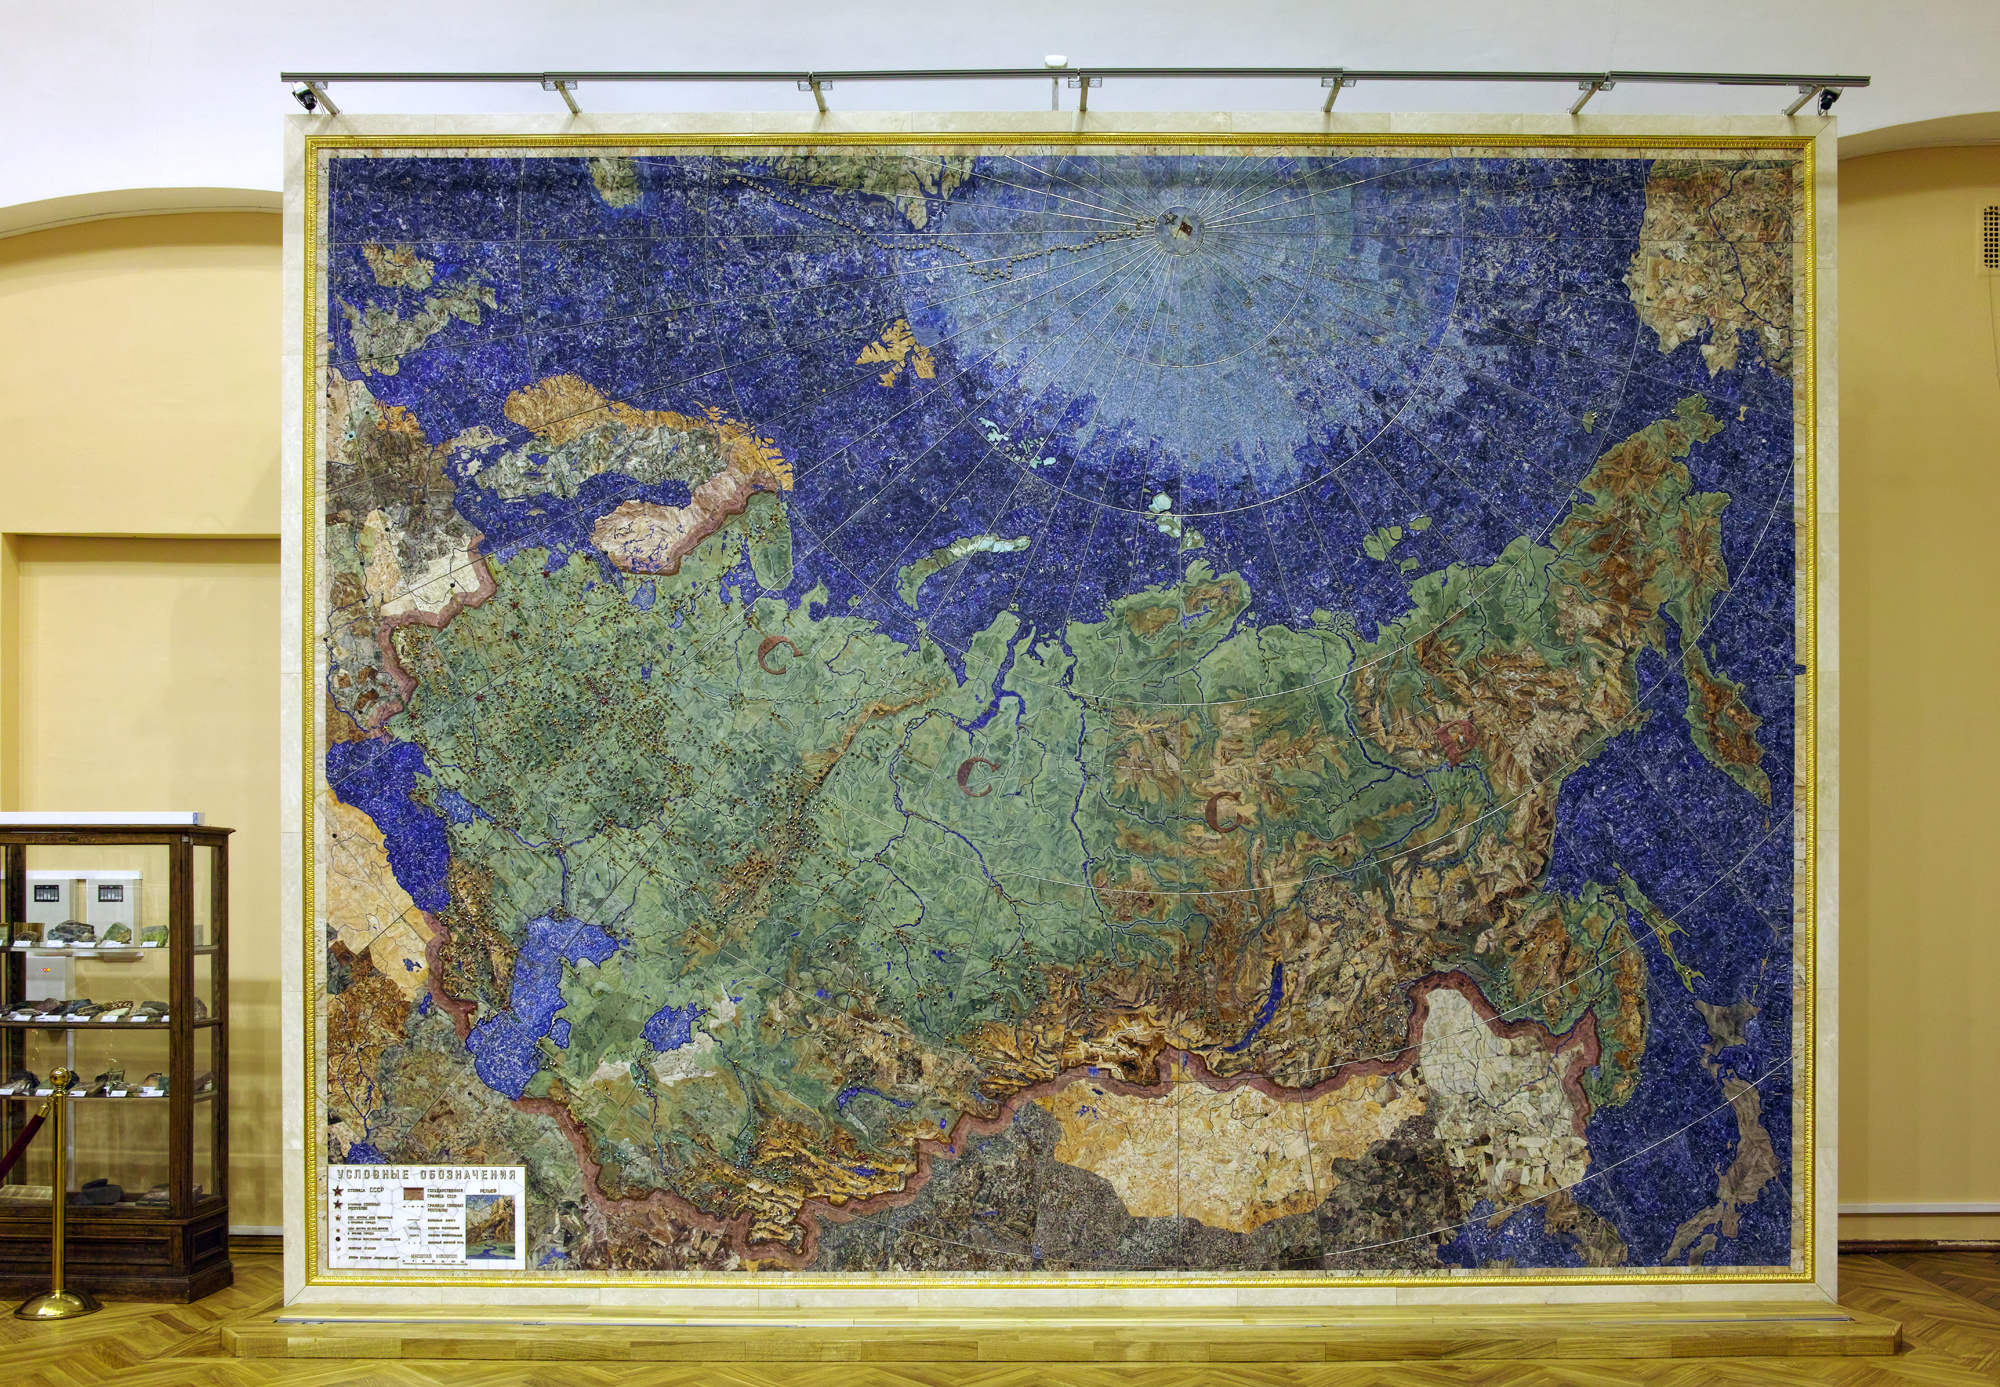 Сегодня карта экспонируется в Центральном научно-исследовательском геологоразведочном музее имени академика Ф. Н. Чернышёва (Санкт-Петербург). Фото: ЦНИГР музей